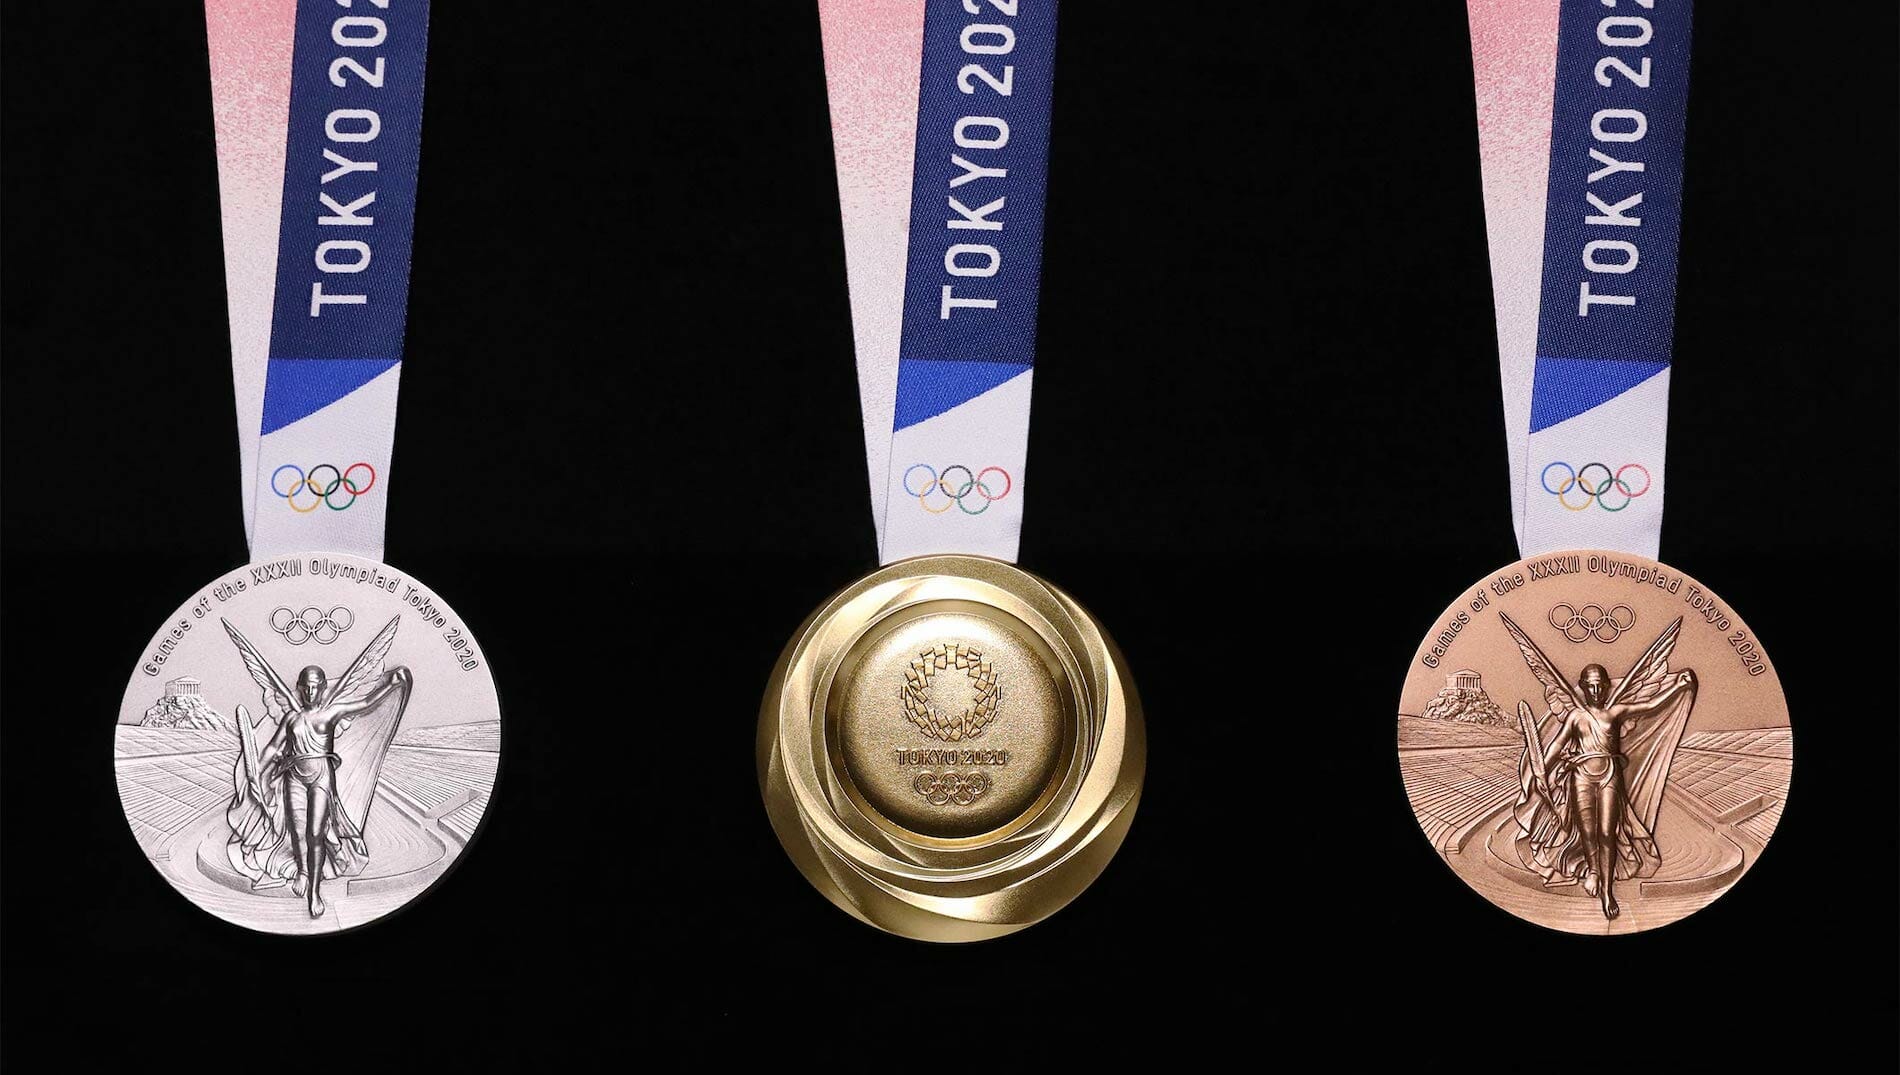 Tokyo 2020-olympiska medaljen kommer att produceras med återvunna prylar